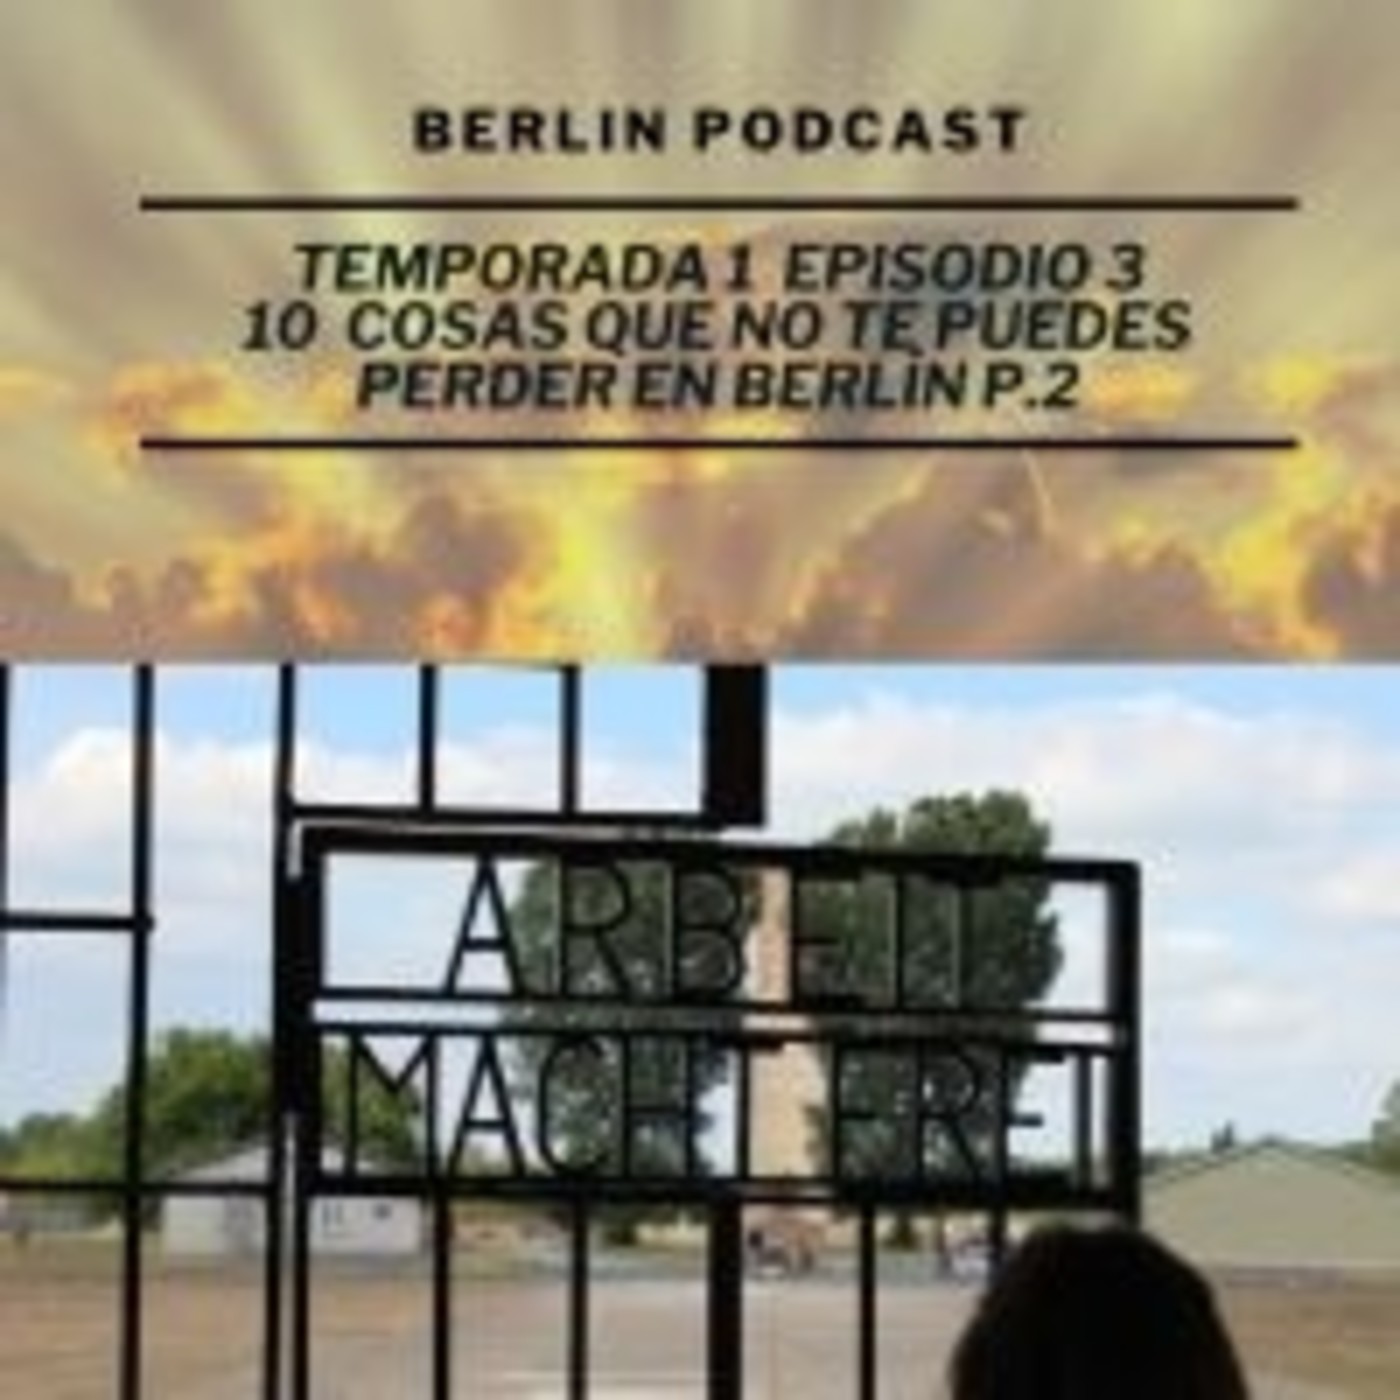 10 cosas que no te puedes perder en Berlín P.2 | Berlin Podcast